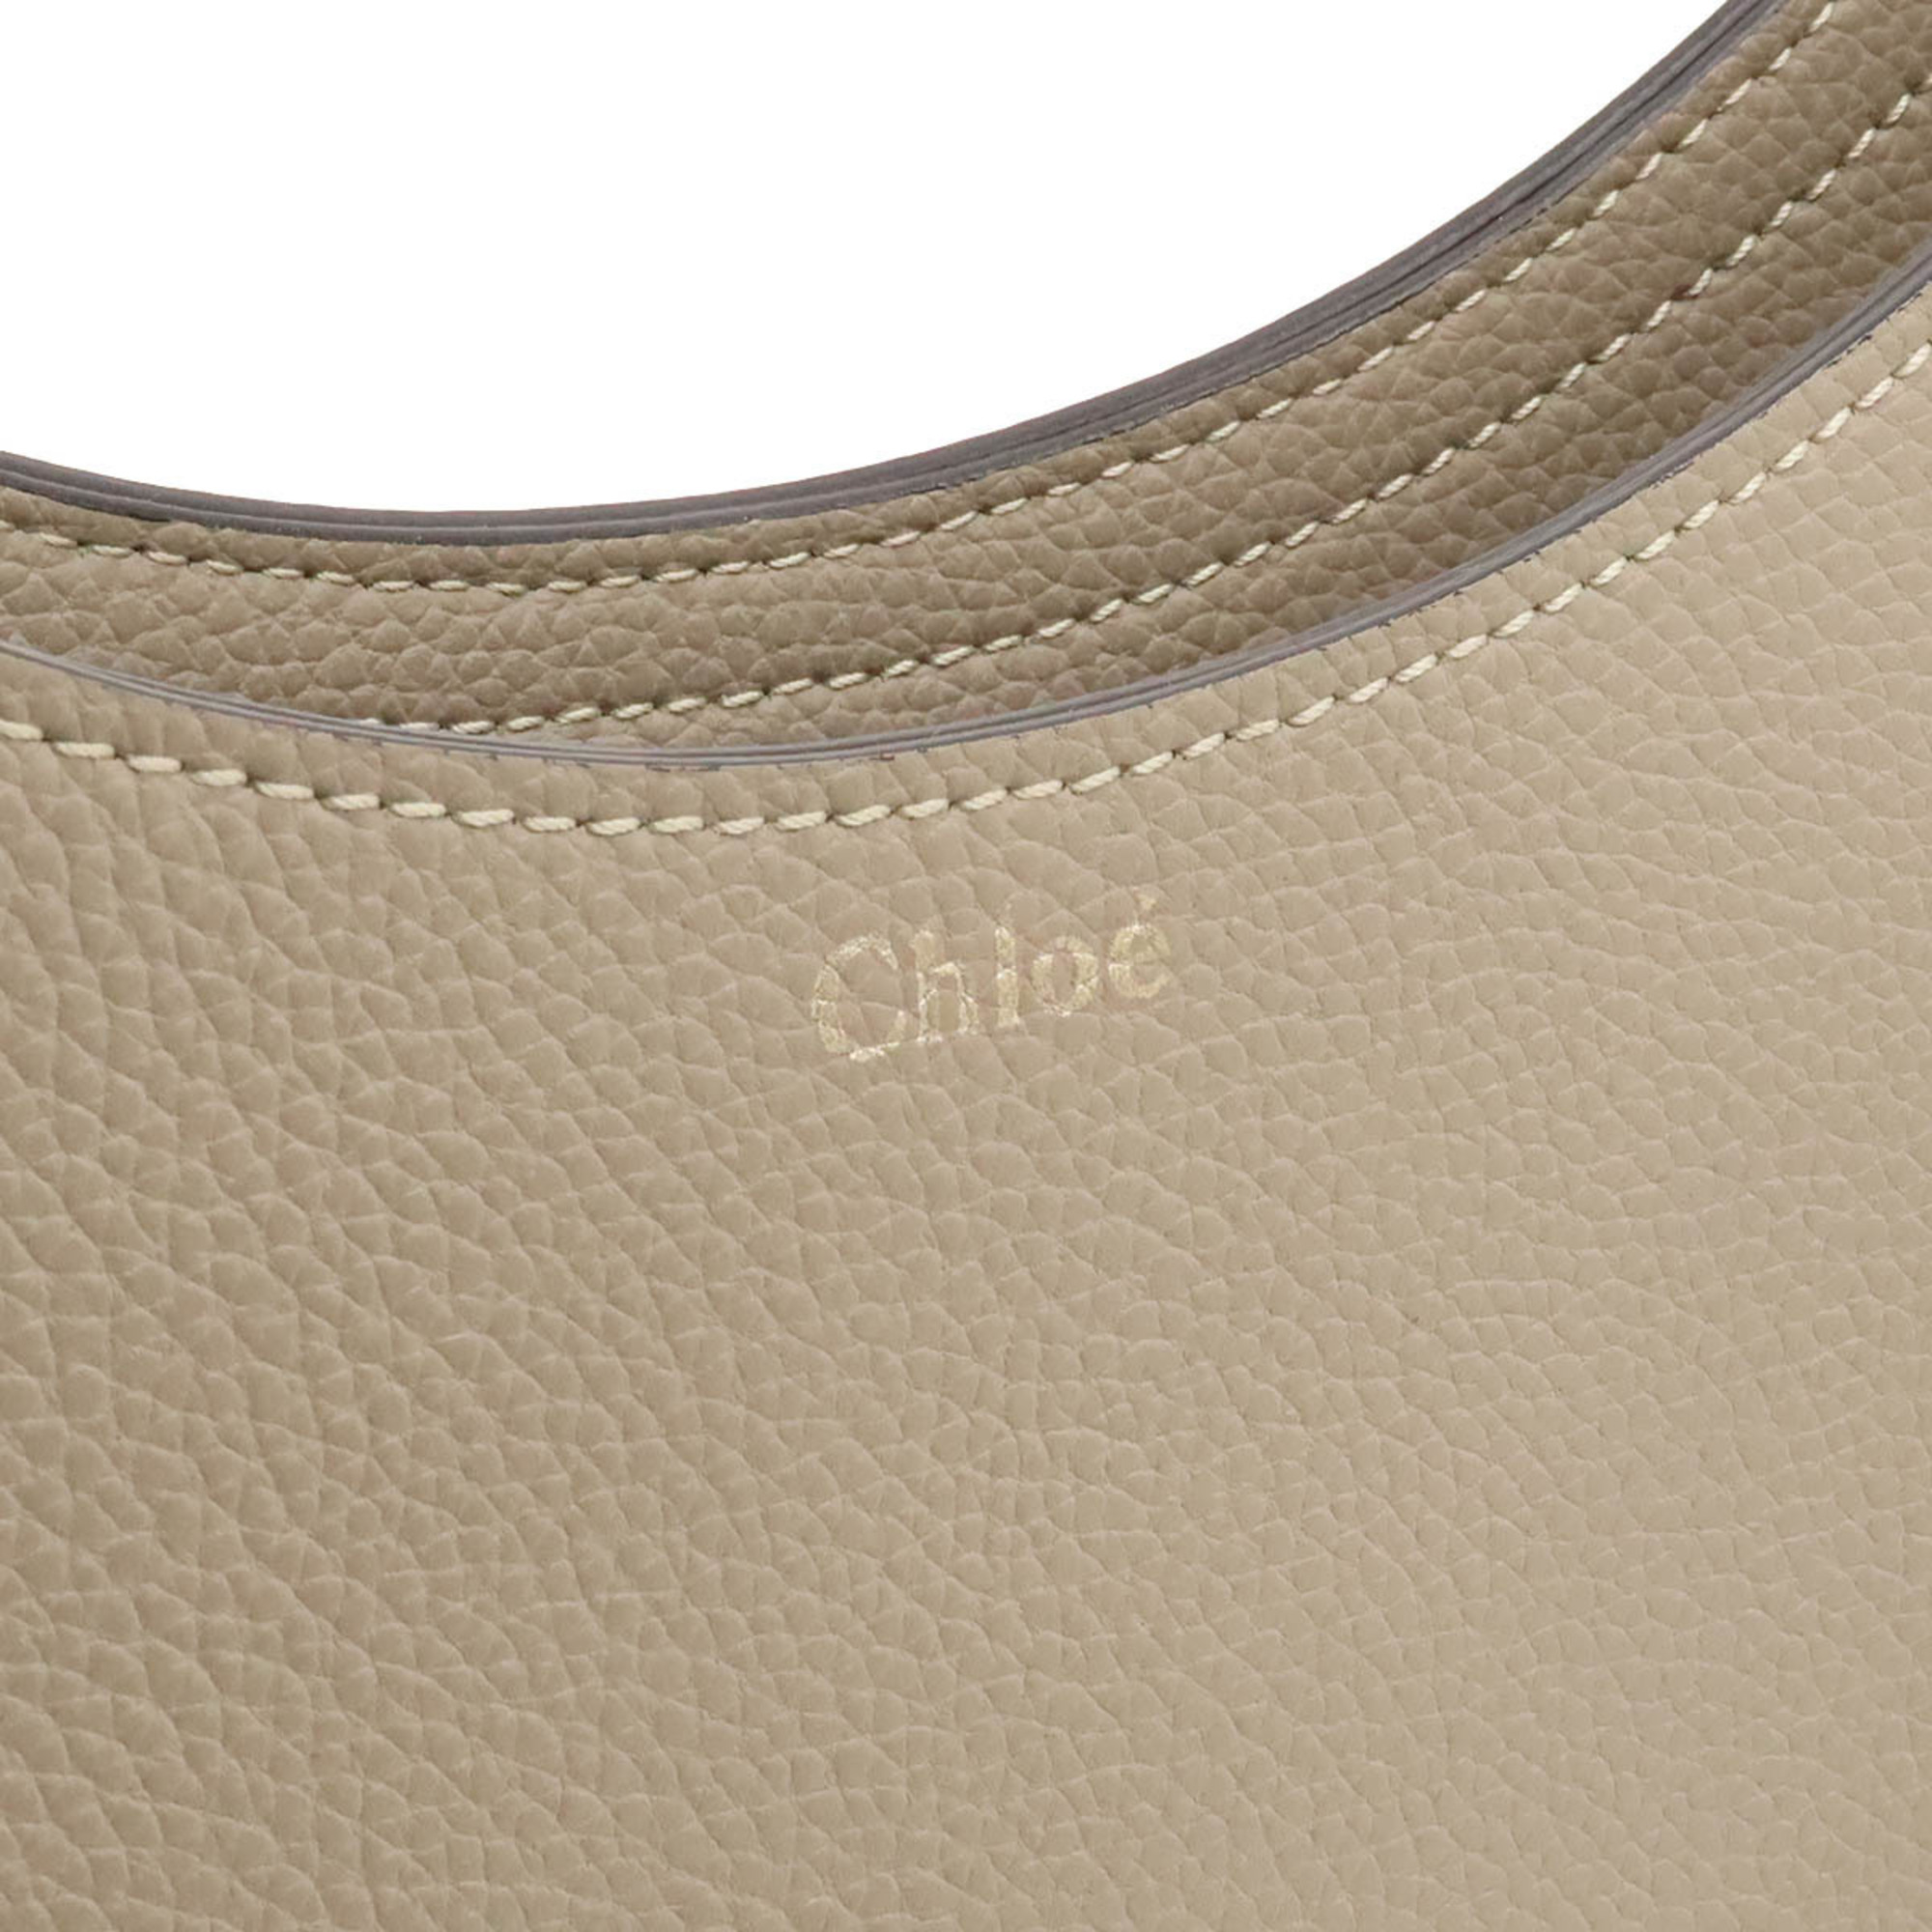 Chloé Chloe Darryl Small Hobo Shoulder Bag Leather Greige CHC20US342C6123W